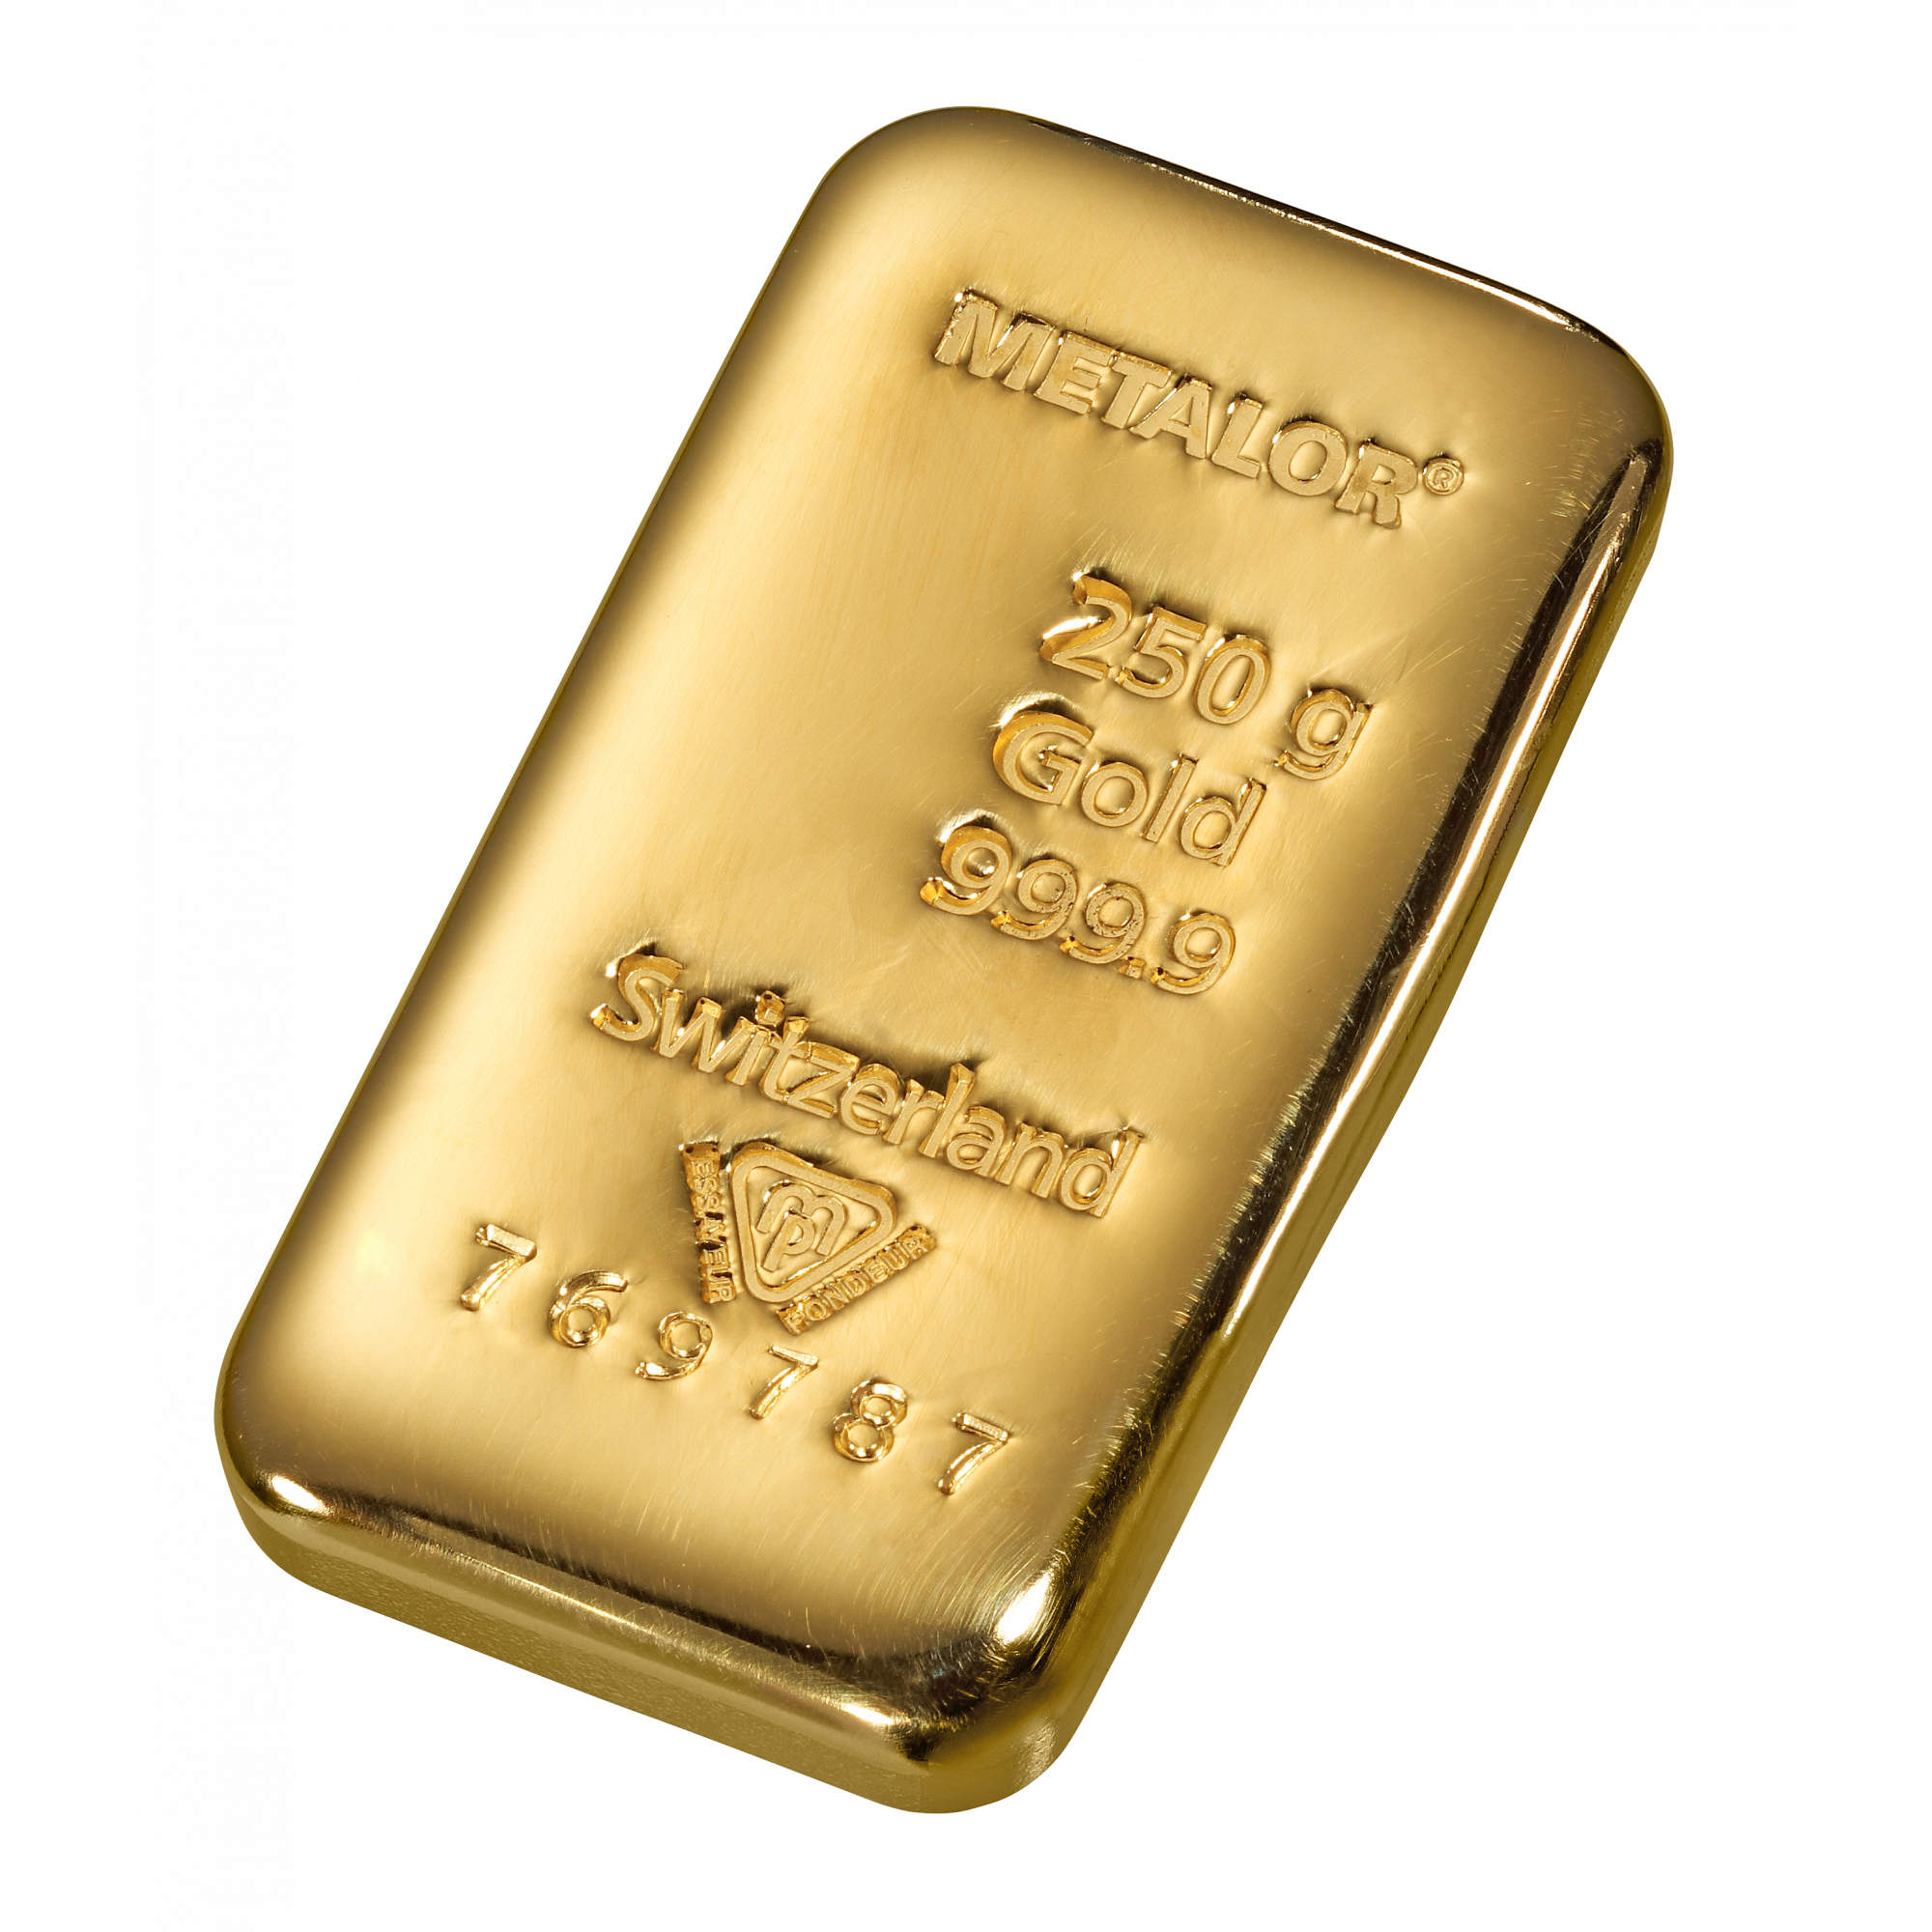 250 gr. - en verkoop goudprijs - beleggen in goud